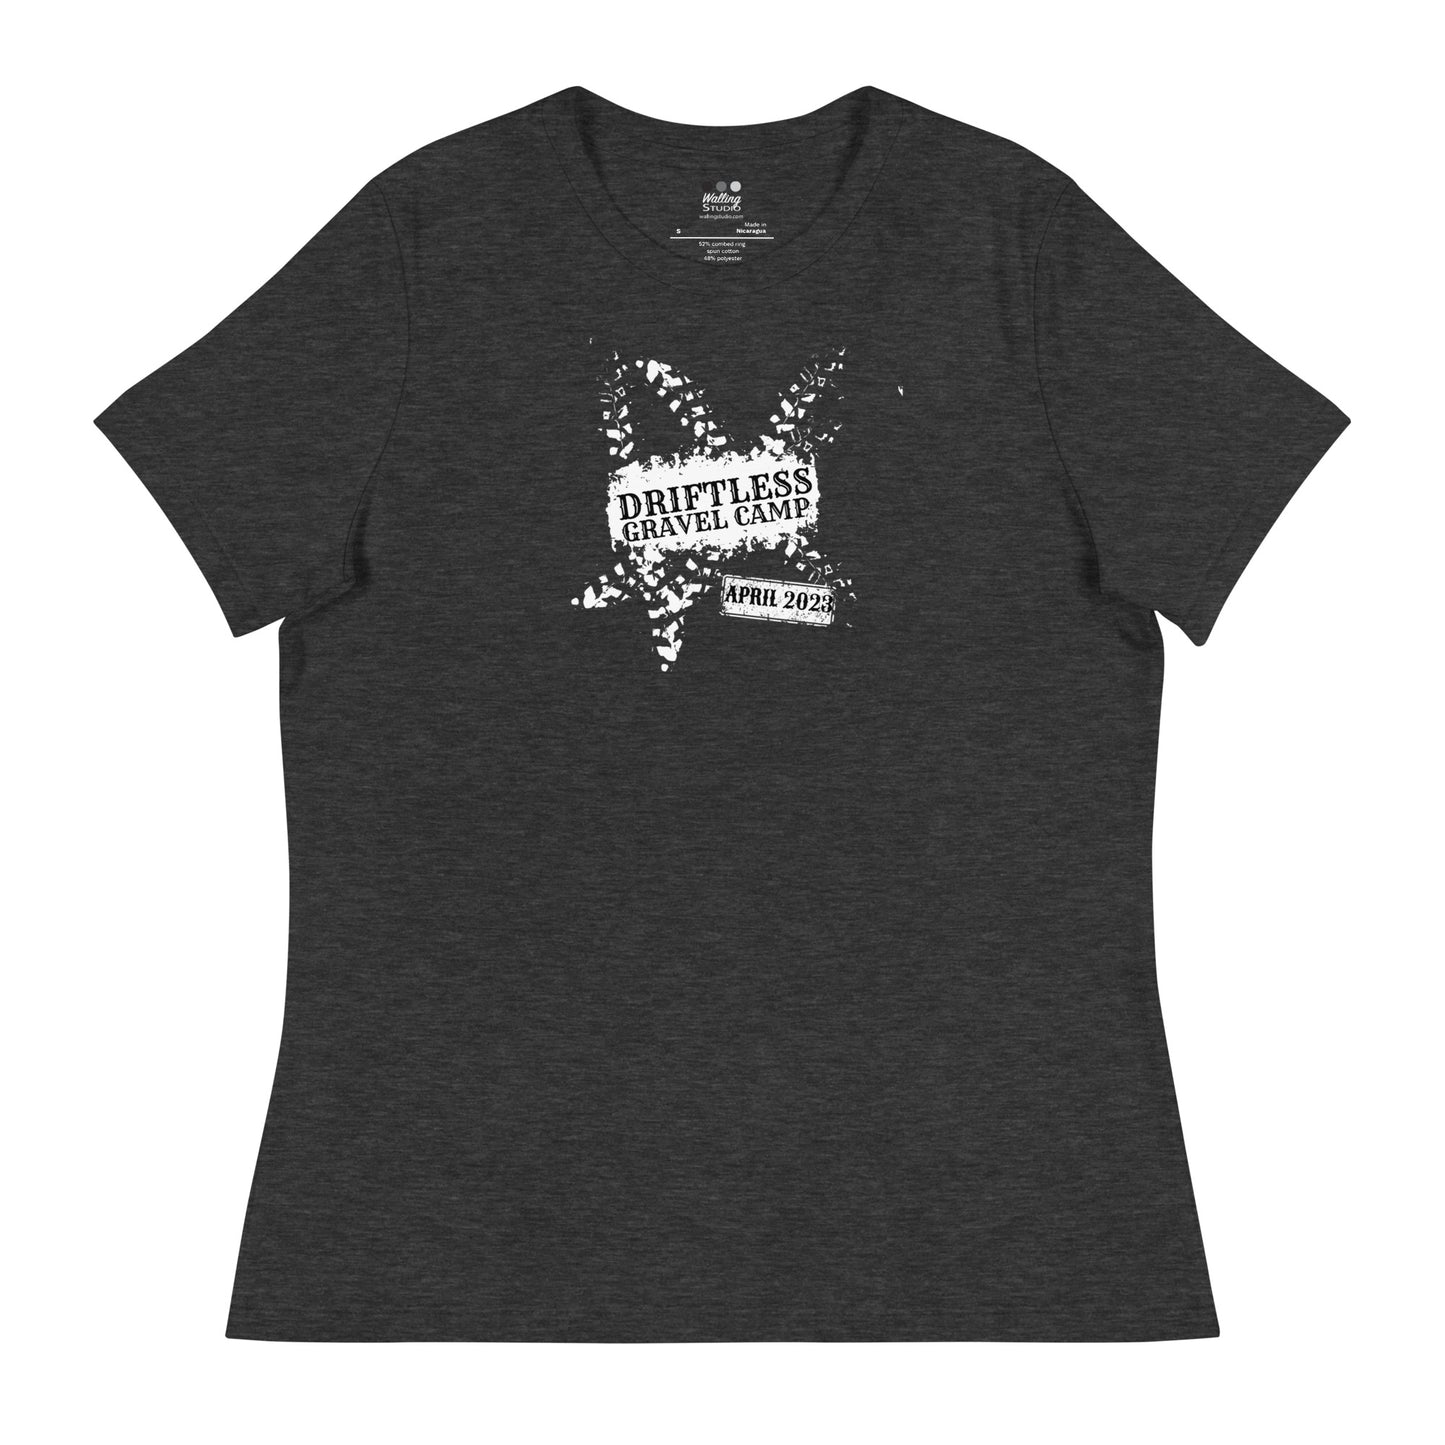 Driftless Gravel Camp - Women's Relaxed T-Shirt